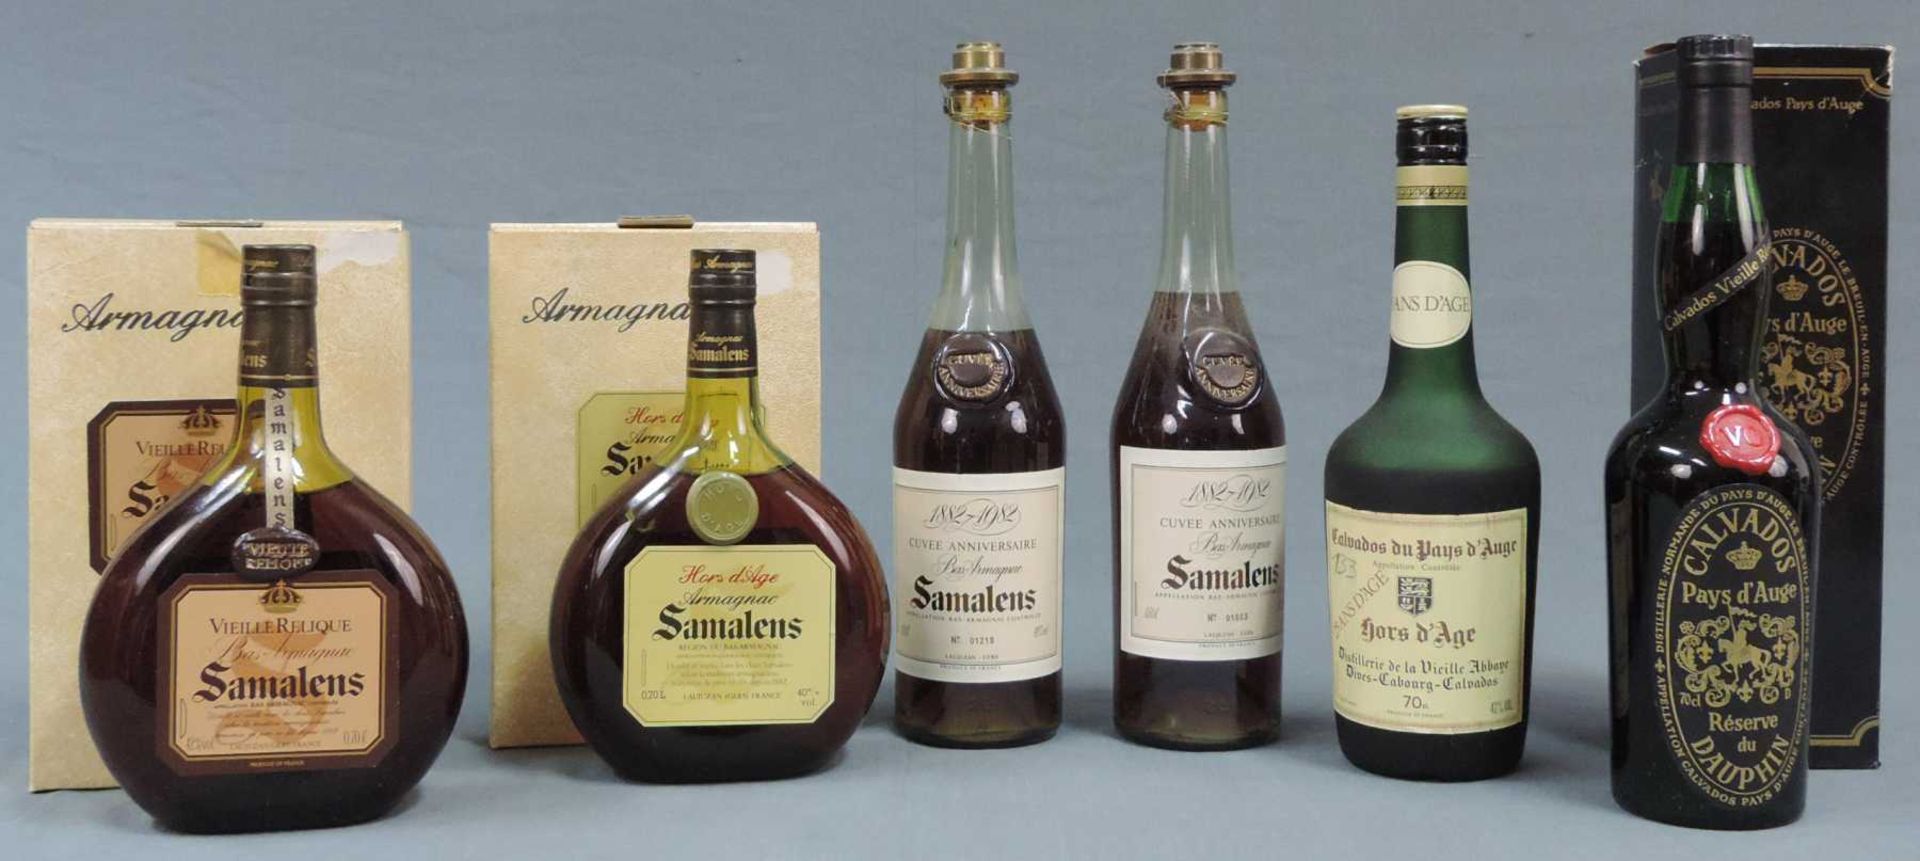 4 Flaschen Armagnac, 2 Flaschen Calvados. Unterschiedliche Domaines. Ganze Flaschen. Die Flasche